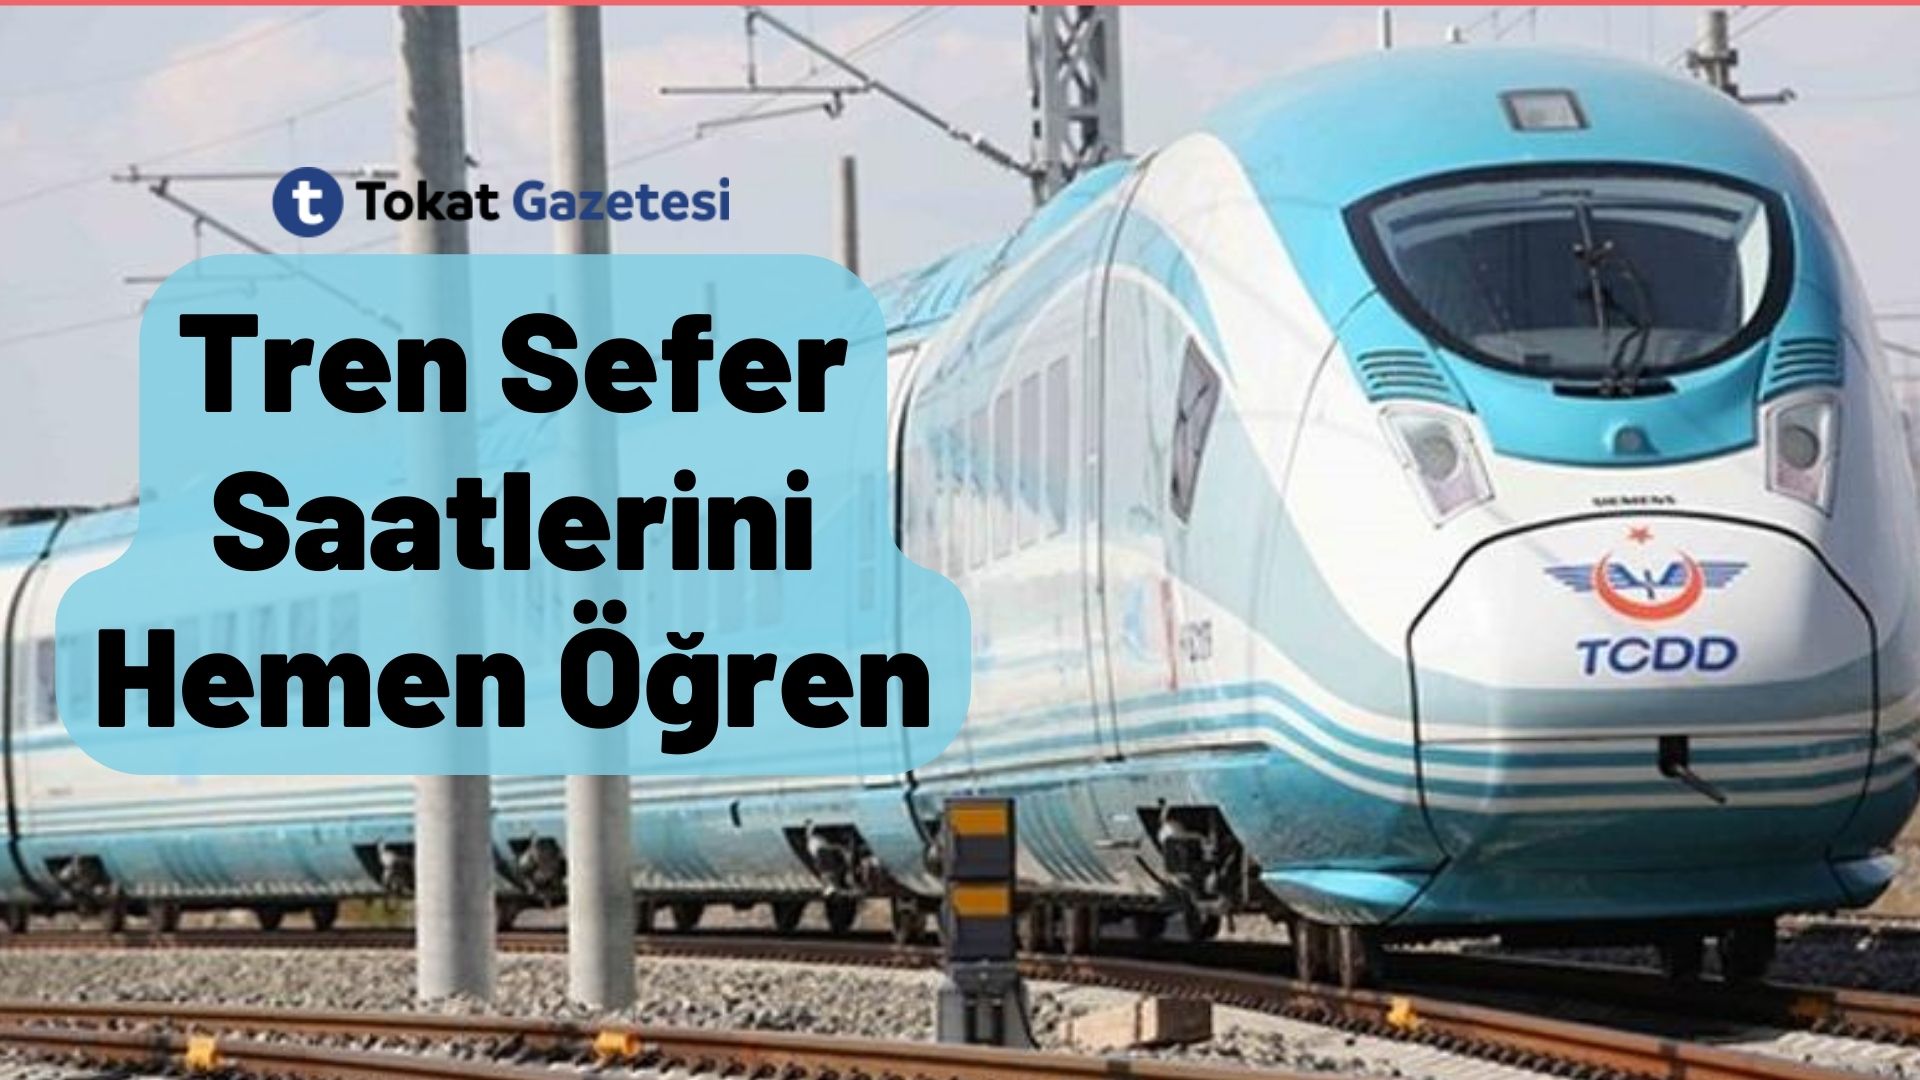 İzmir (Basmane) – Piyadeler Tren Saatleri